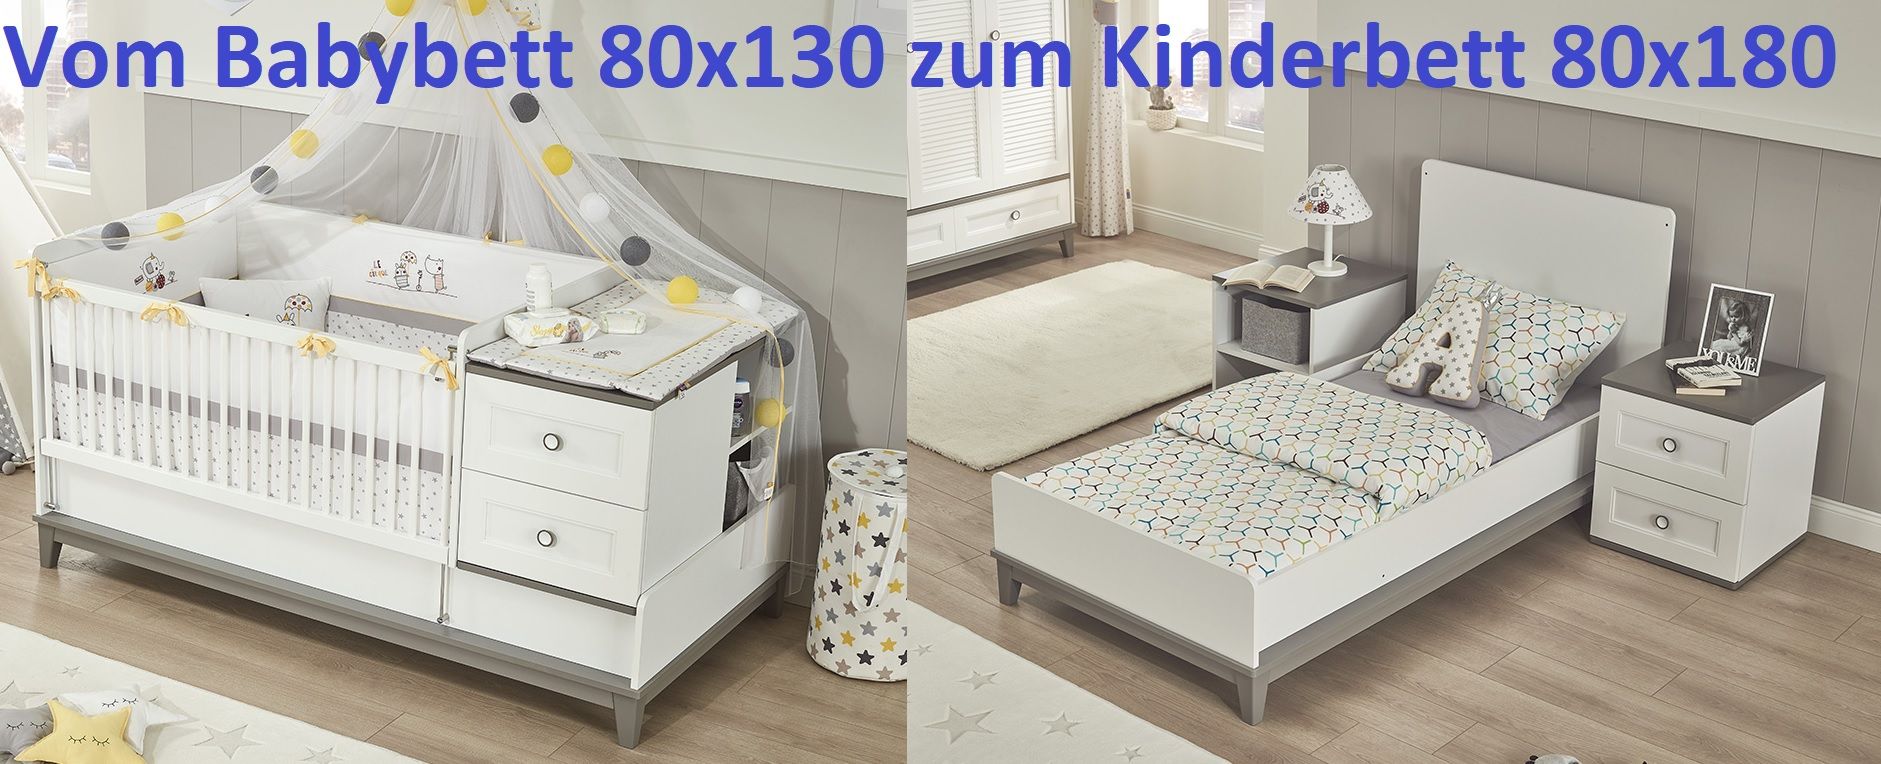 Babybett Mia vergrößerbar 80x130-180 cm inkl. 2-Schubladen in Weiss/Grau